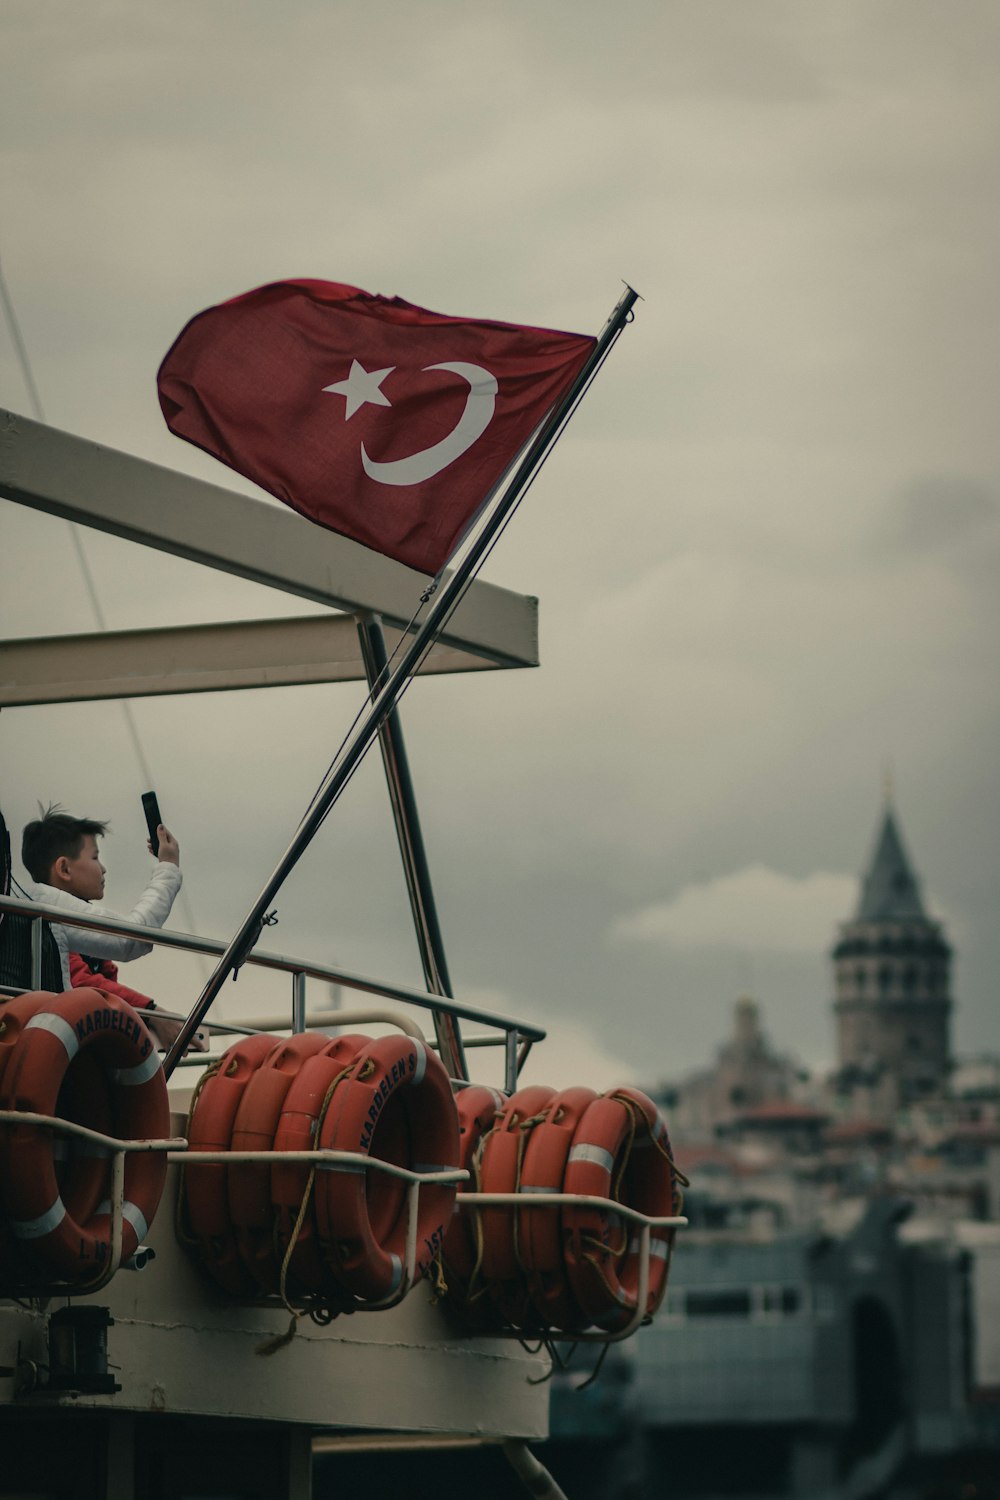 Türkische Flagge am Mast auf dem Boot während des Tages